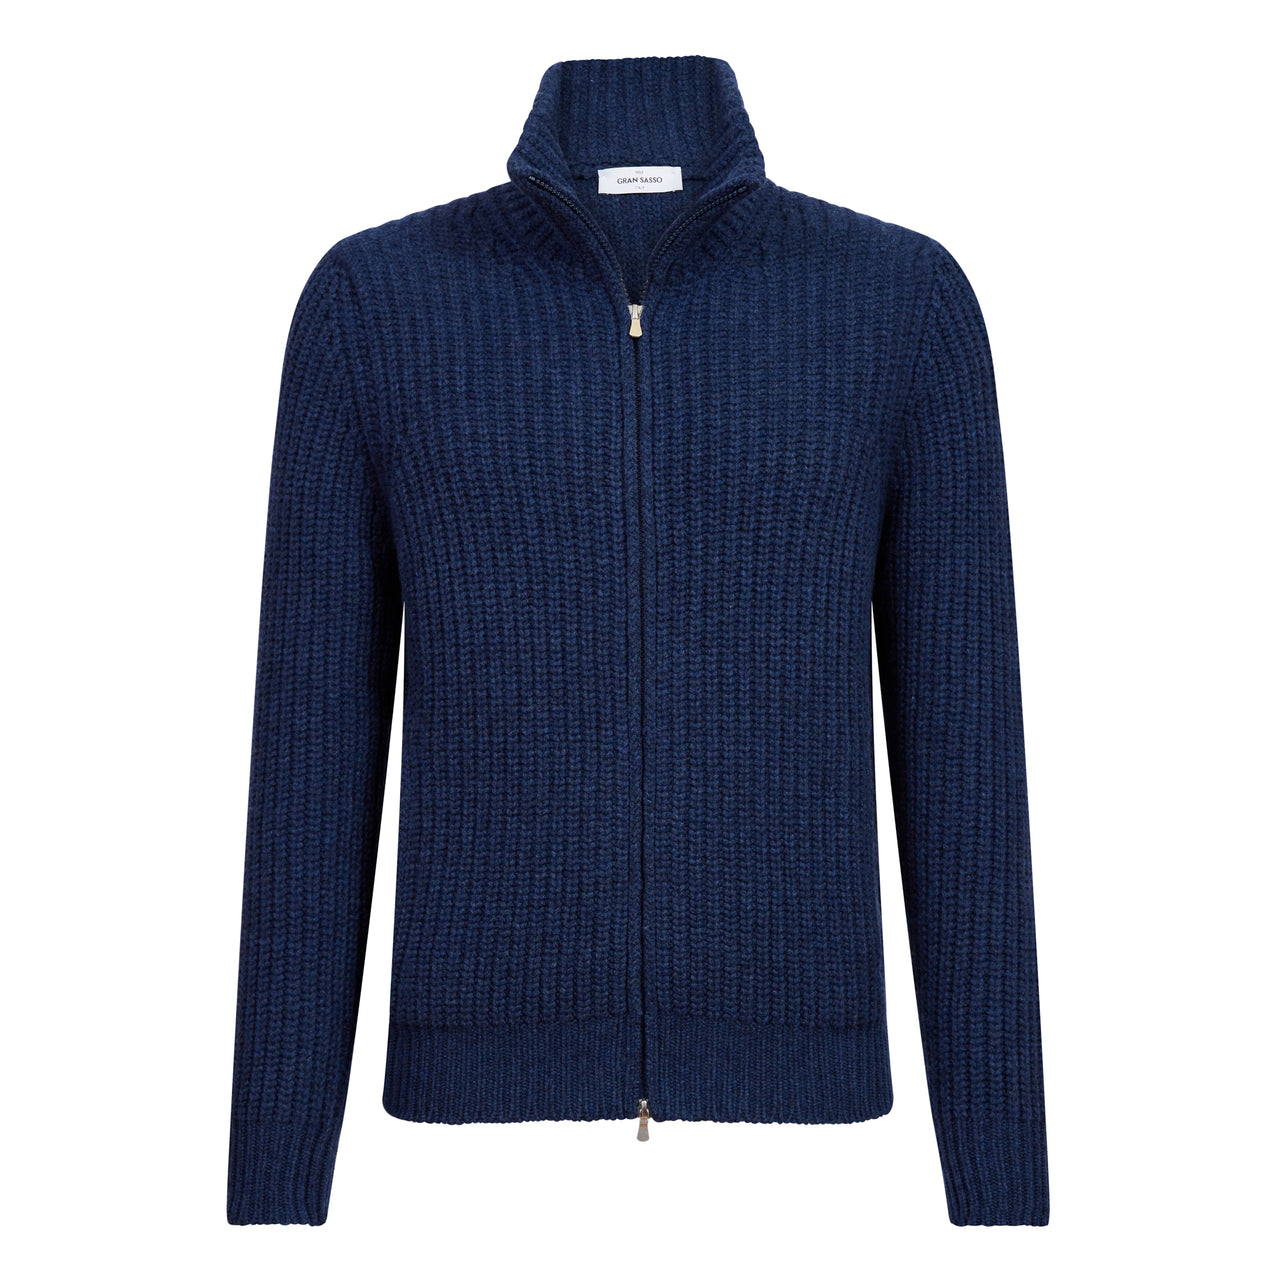 GRAN SASSO Wool/Cashmere Half-Zip Knit NAVY